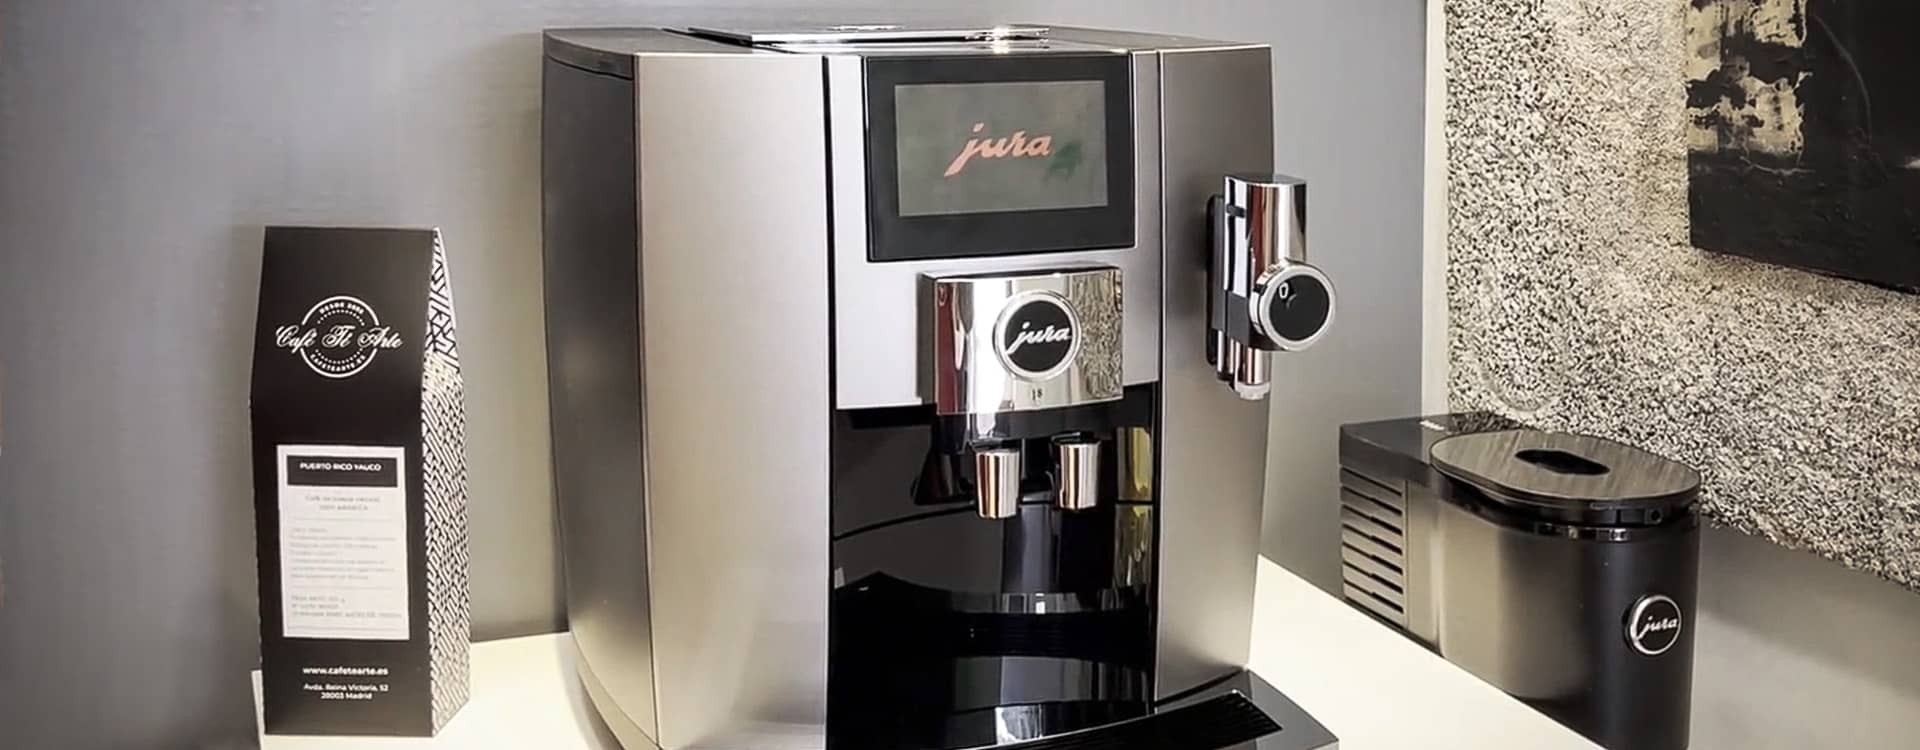 La mejor cafetera Nespresso de 2020: ¿cuál compro? Guía y comparativa